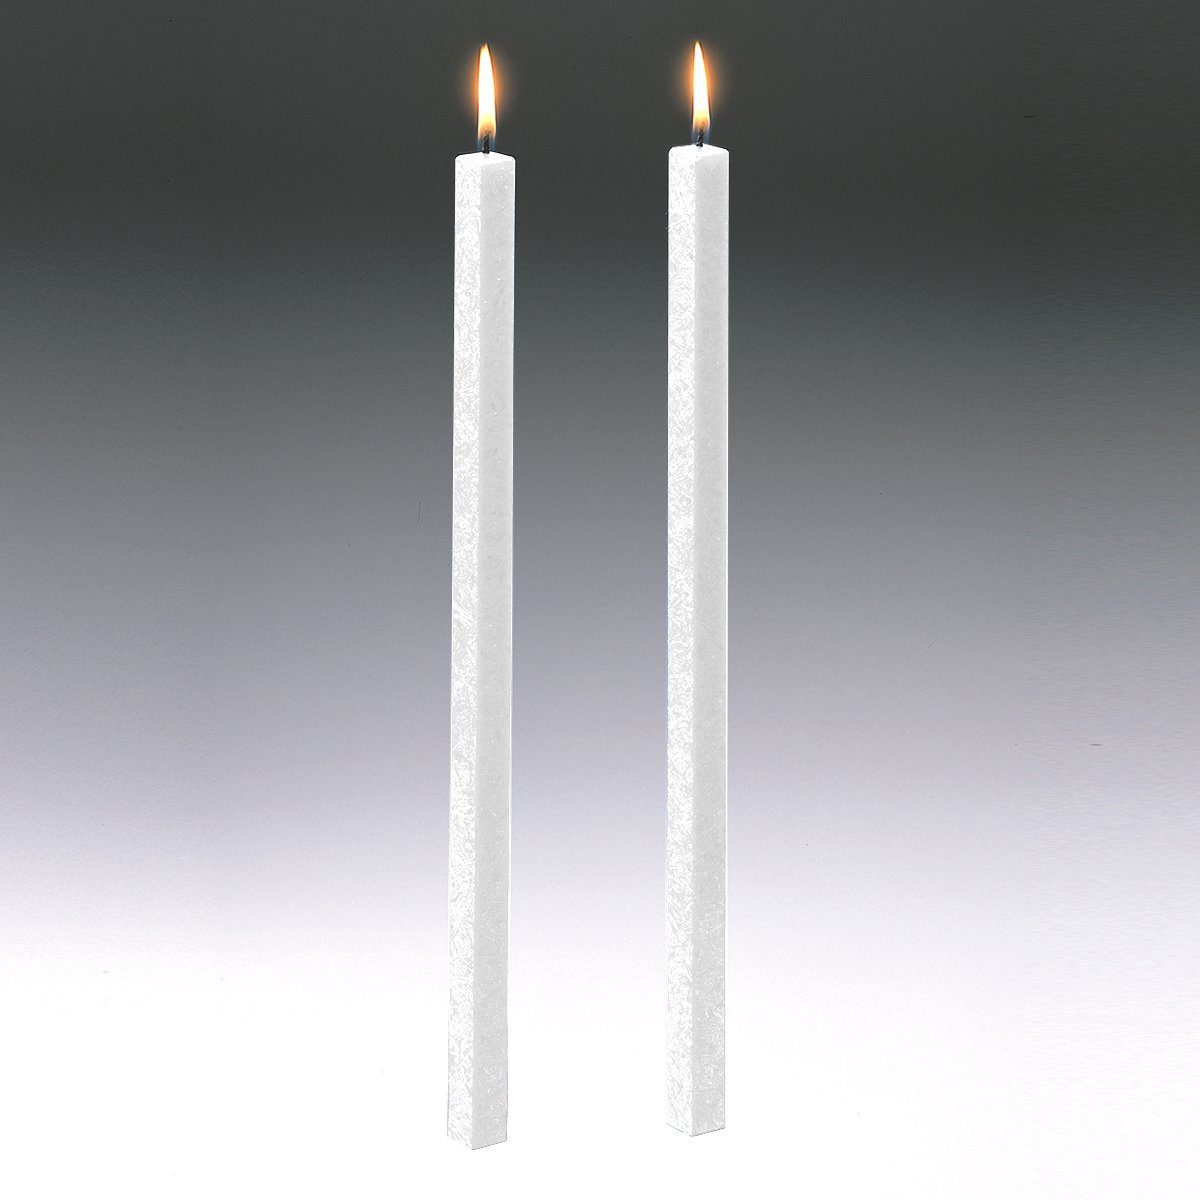 Amabiente Tafelkerze Kerze CLASSIC weiß 40cm - 2er Set